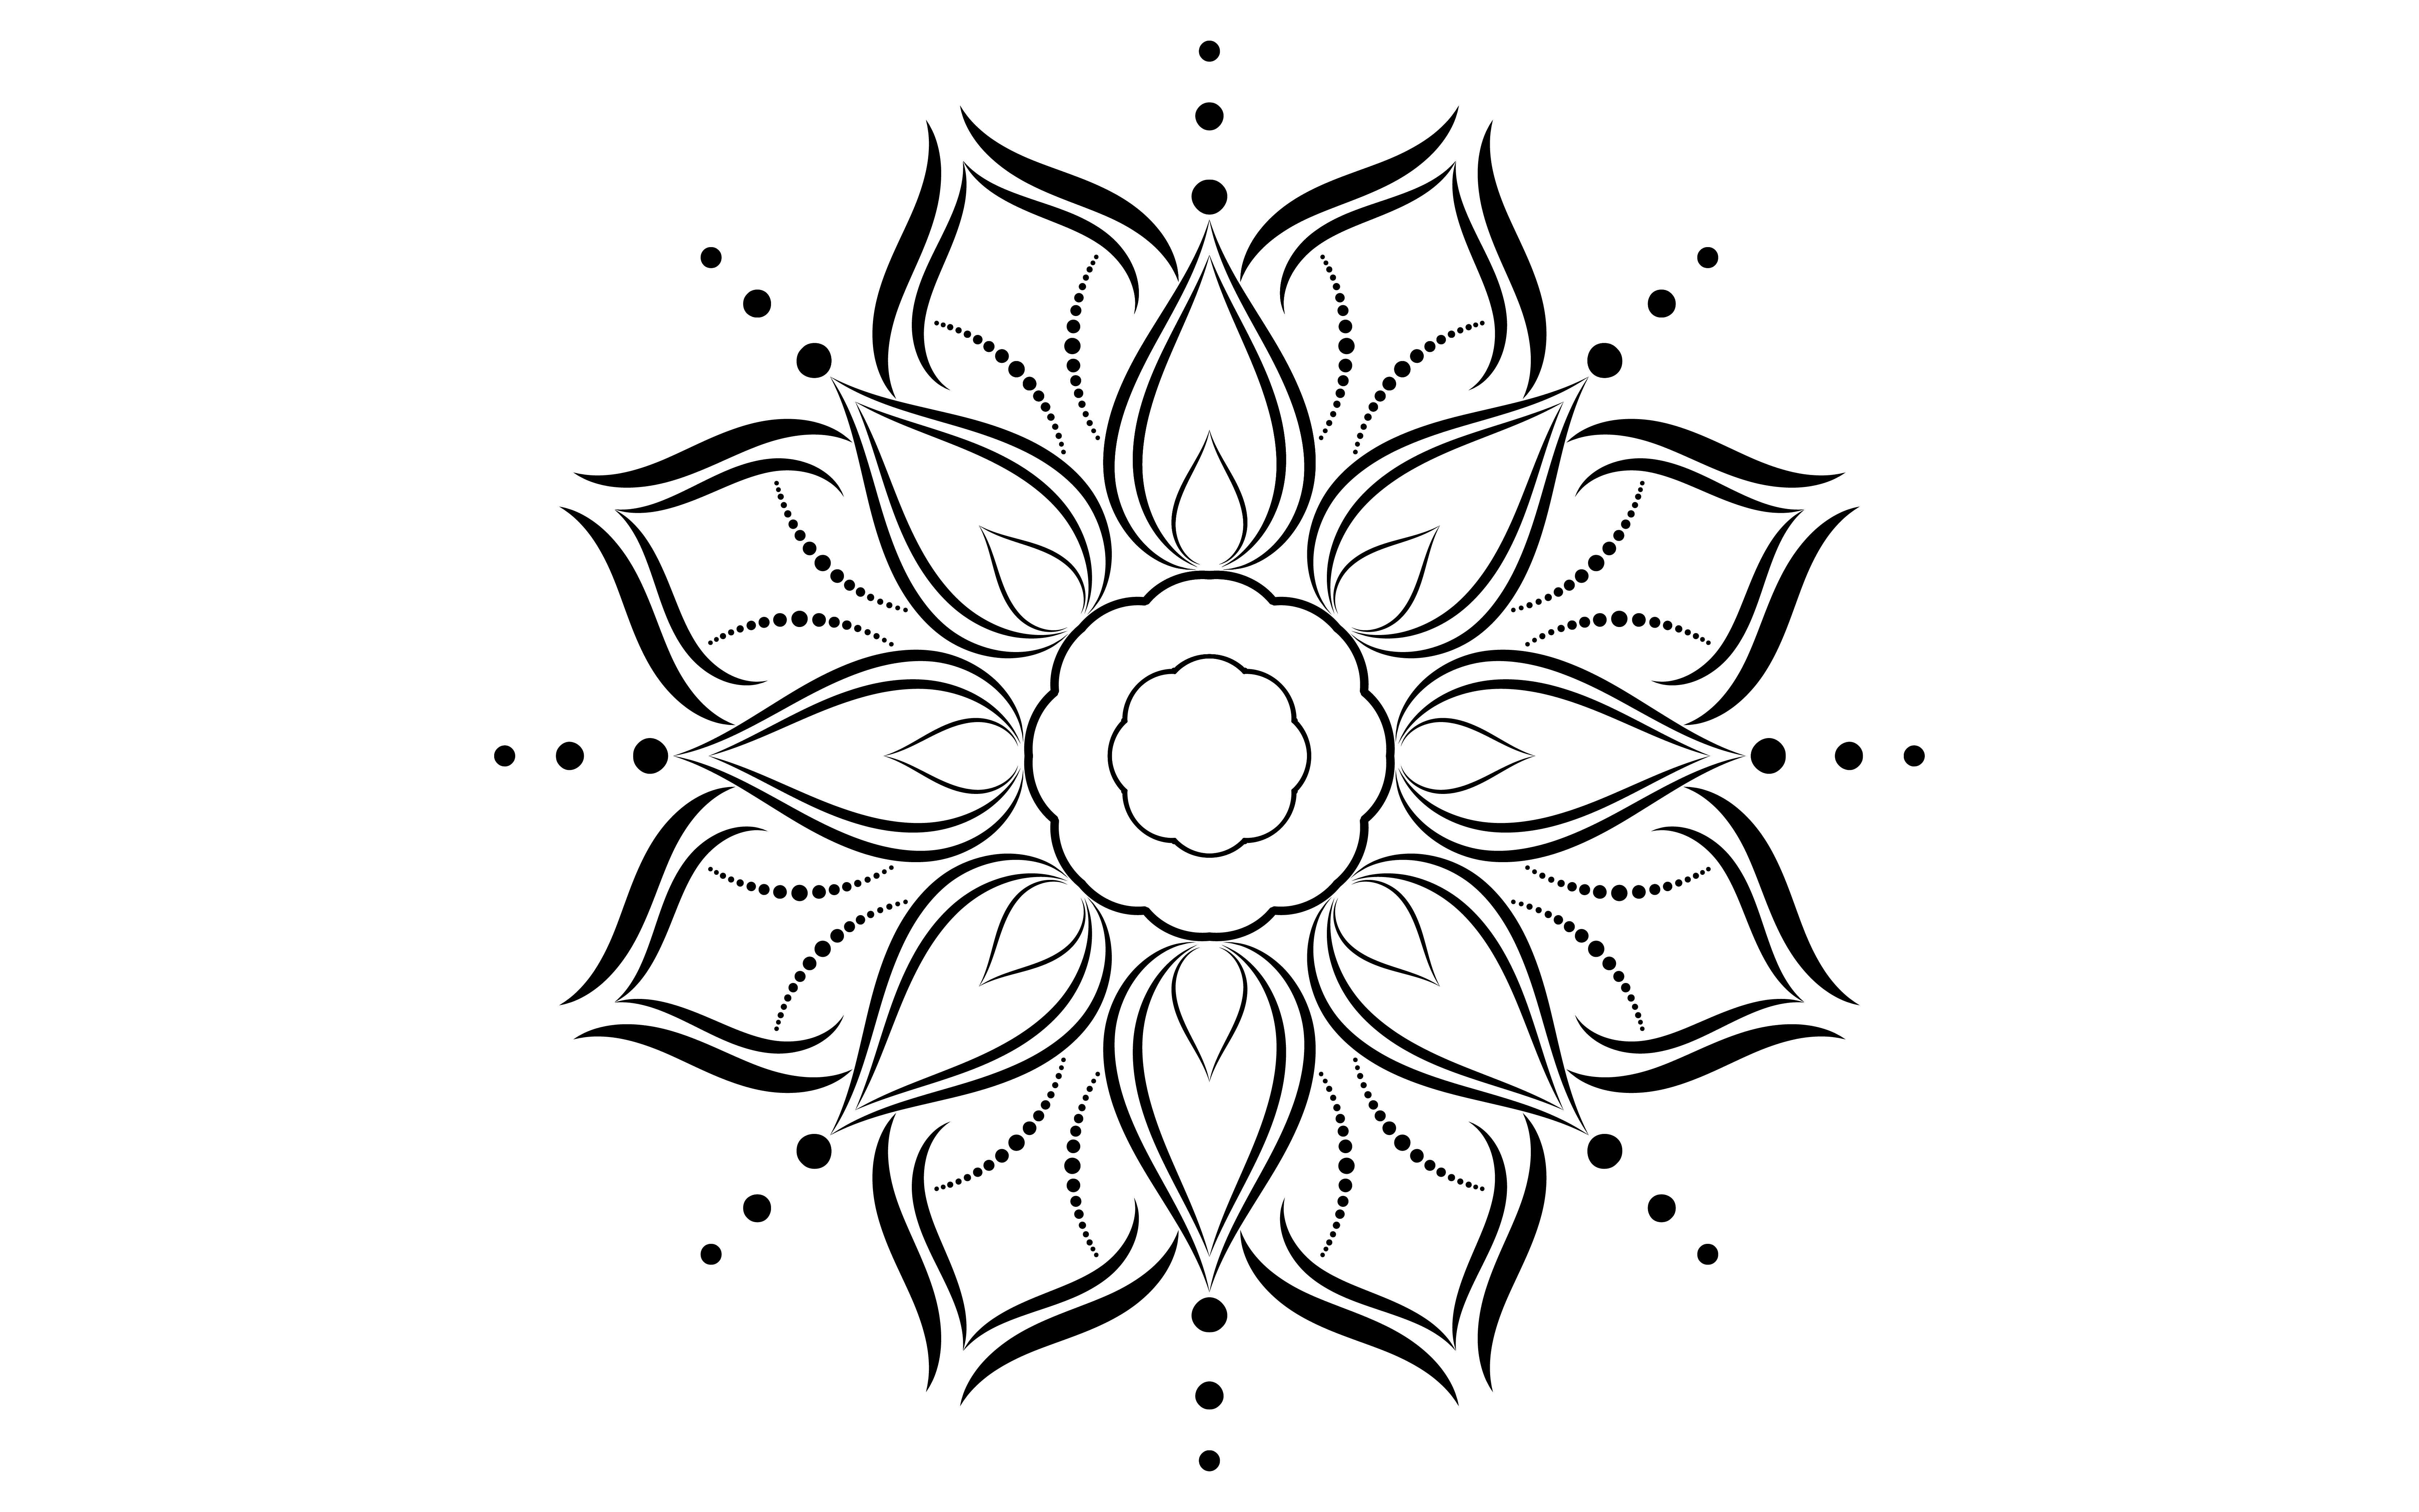 Motif De Mandala Simple Floral Noir Et Blanc Telecharger Vectoriel Gratuit Clipart Graphique Vecteur Dessins Et Pictogramme Gratuit